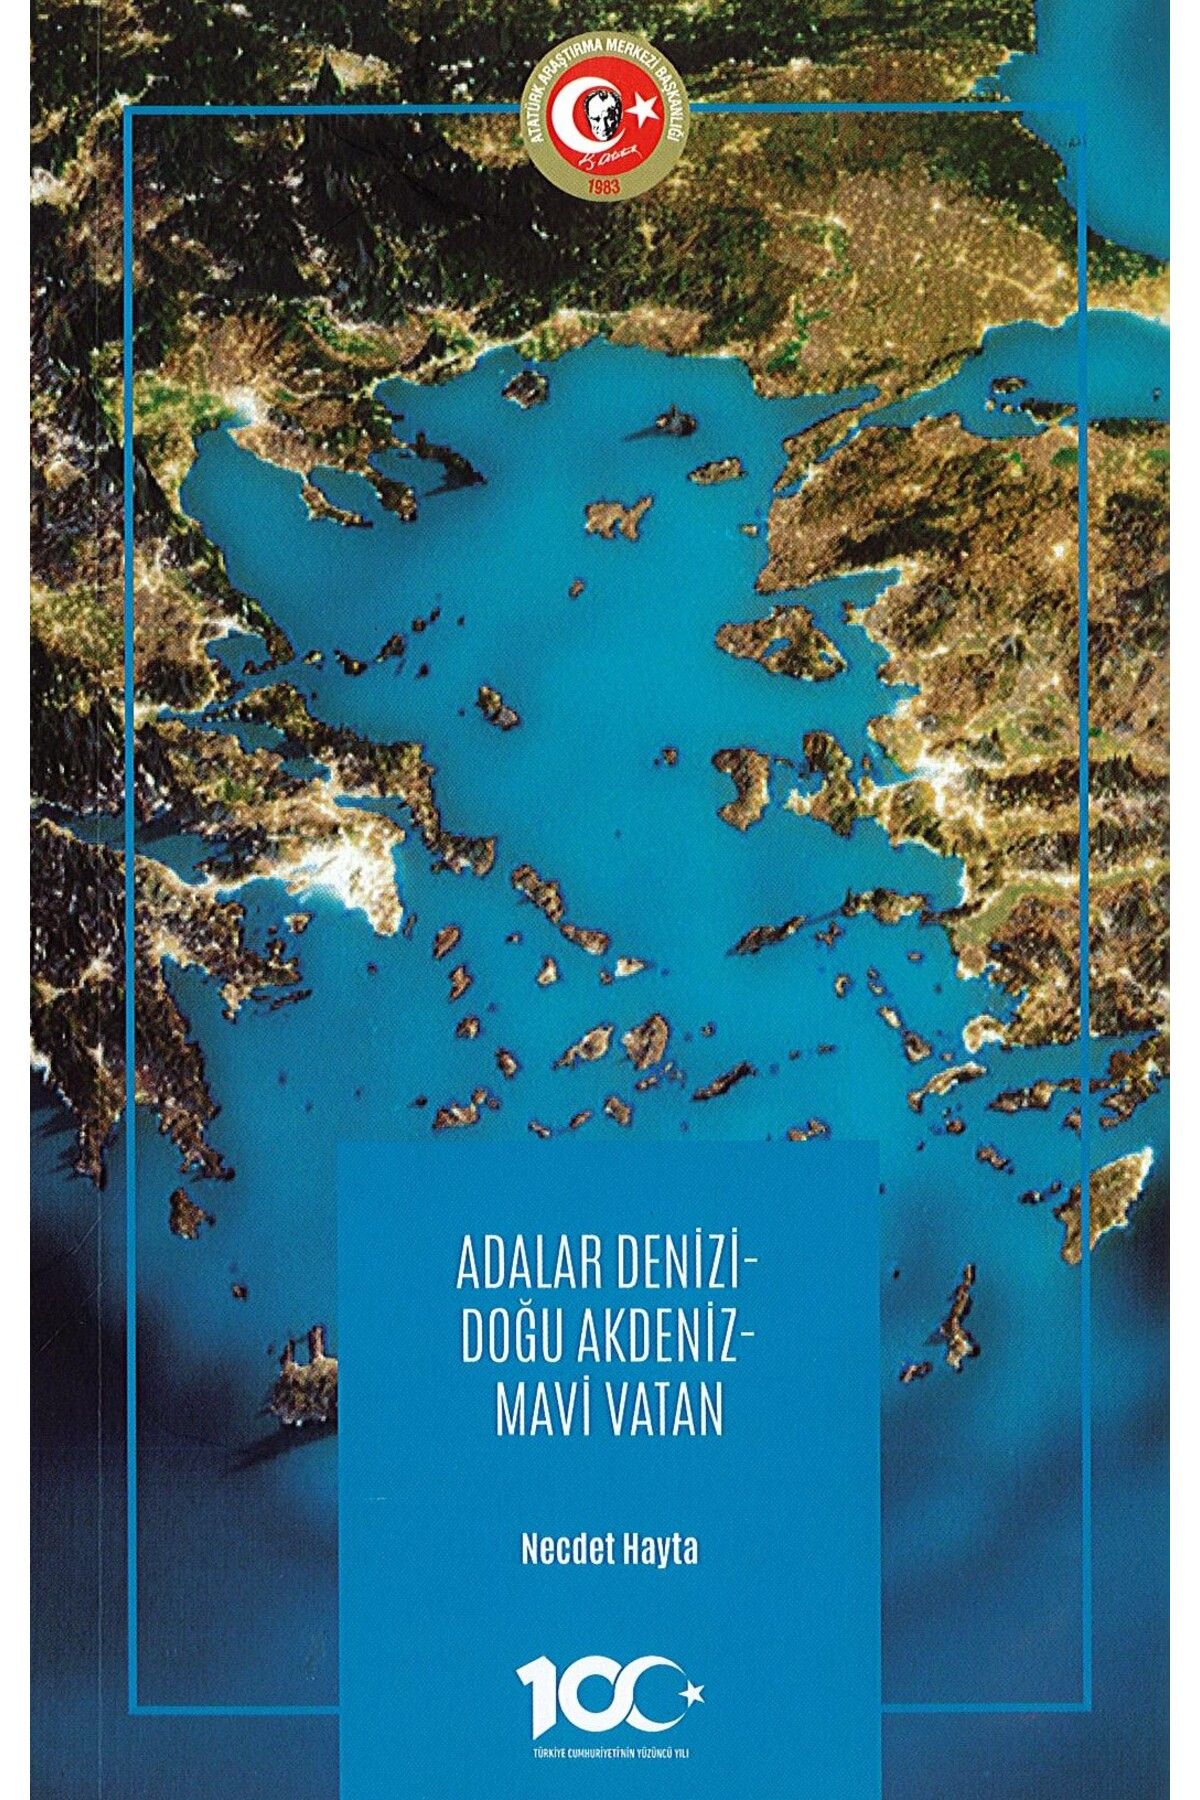 Atatürk Araştırma Merkezi Adalar Denizi- Doğu Akdeniz- Mavi Vatan